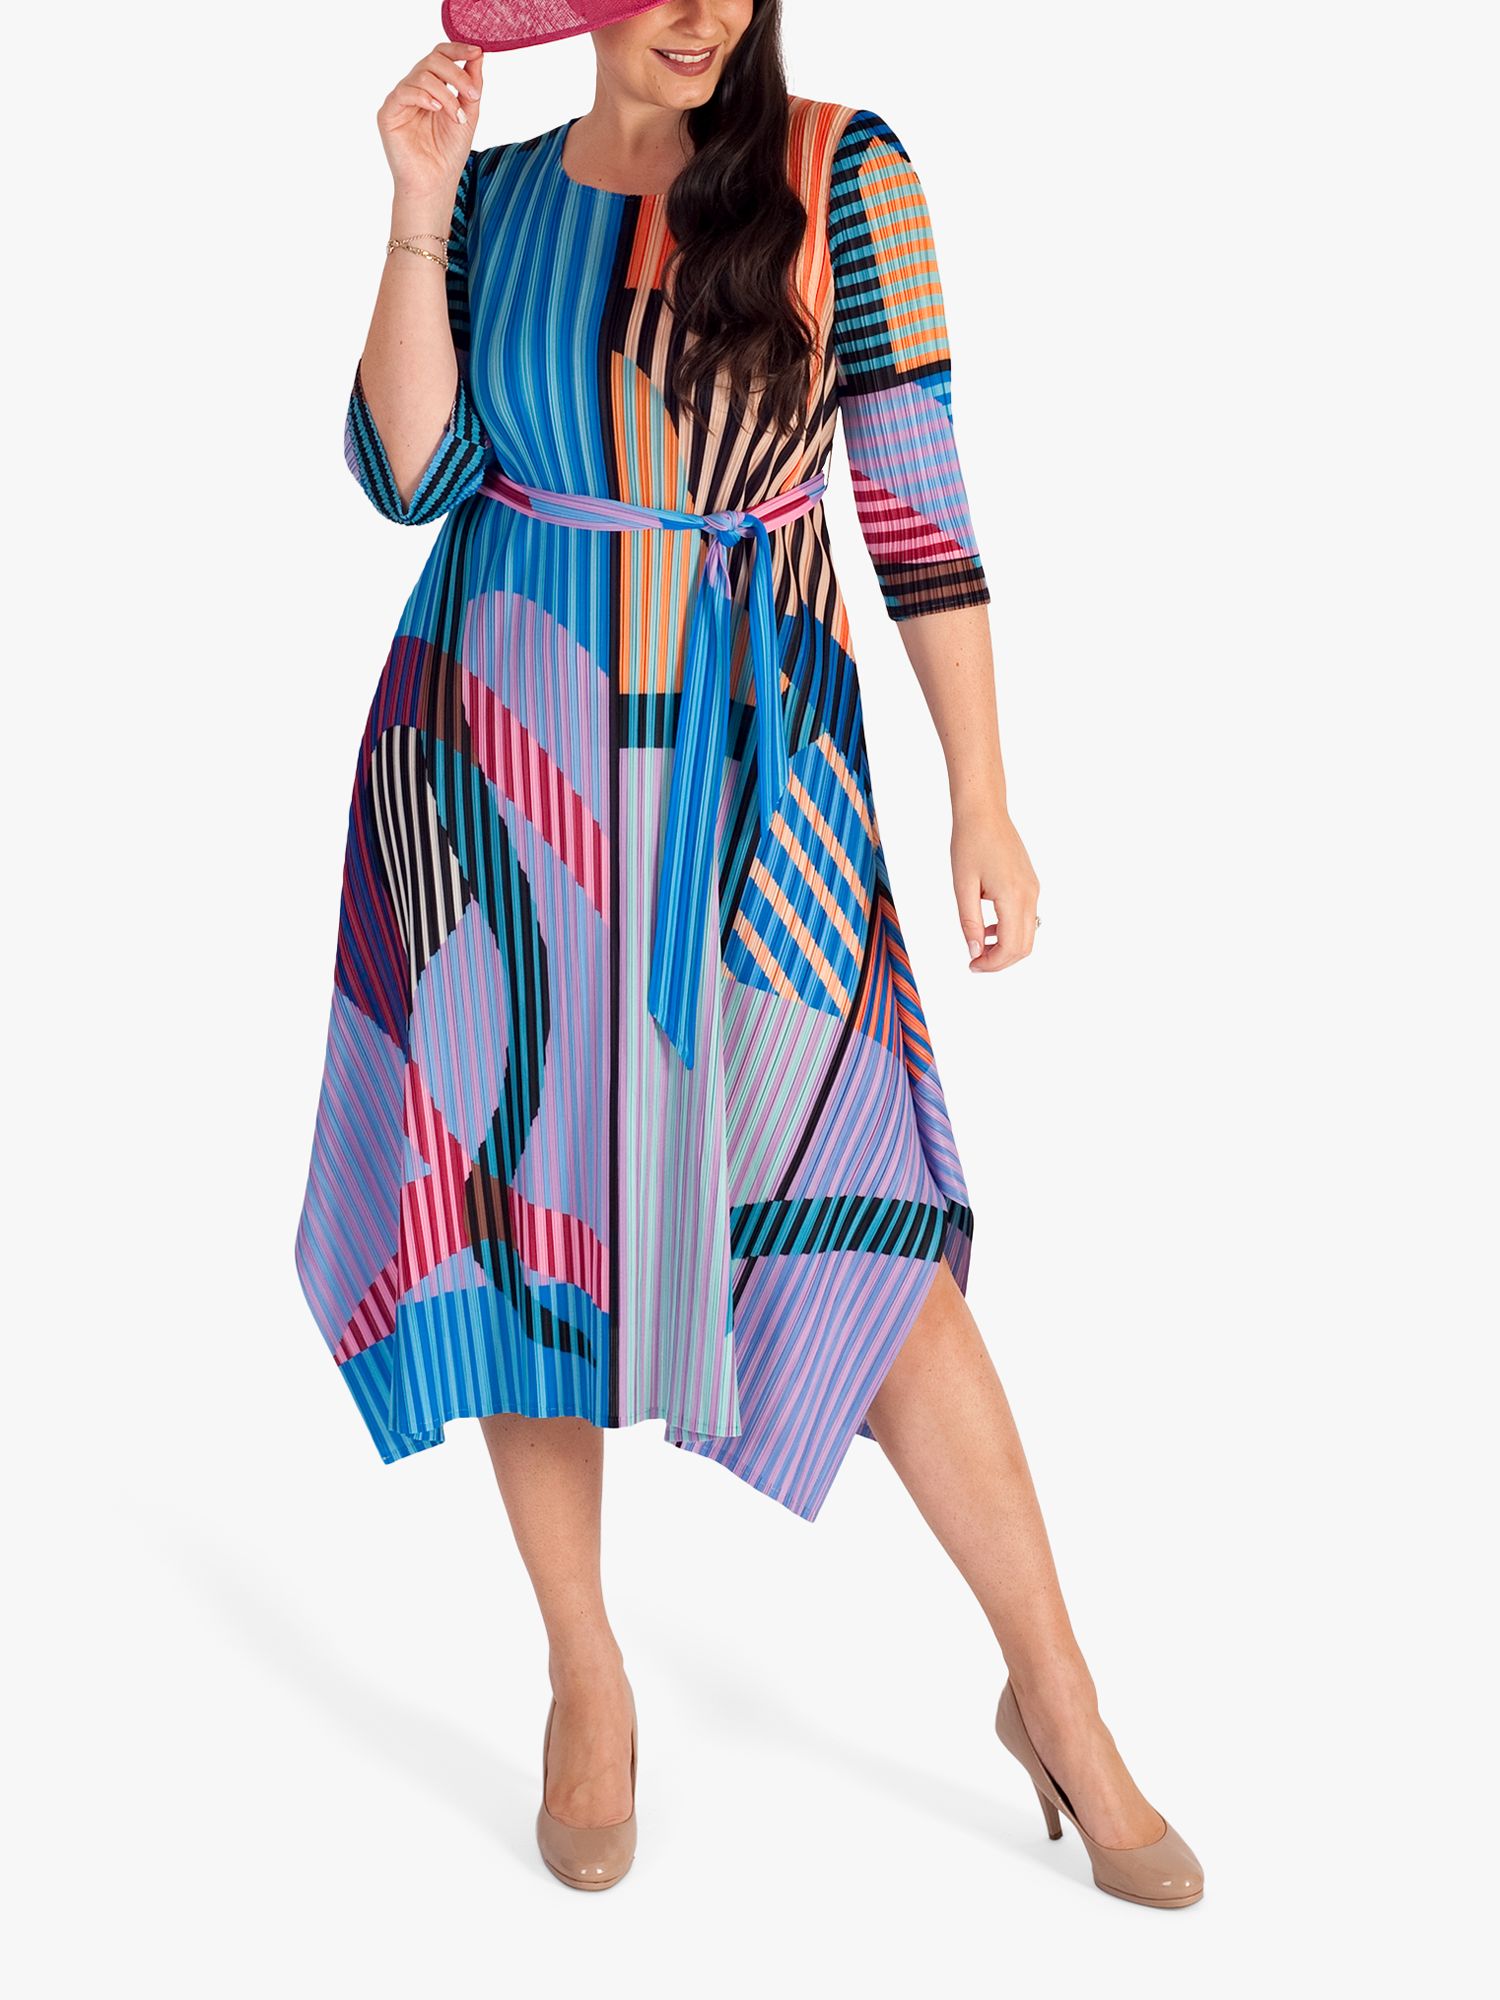 chesca Cosmopolitan Striped Midi Dress, Multi, S-M